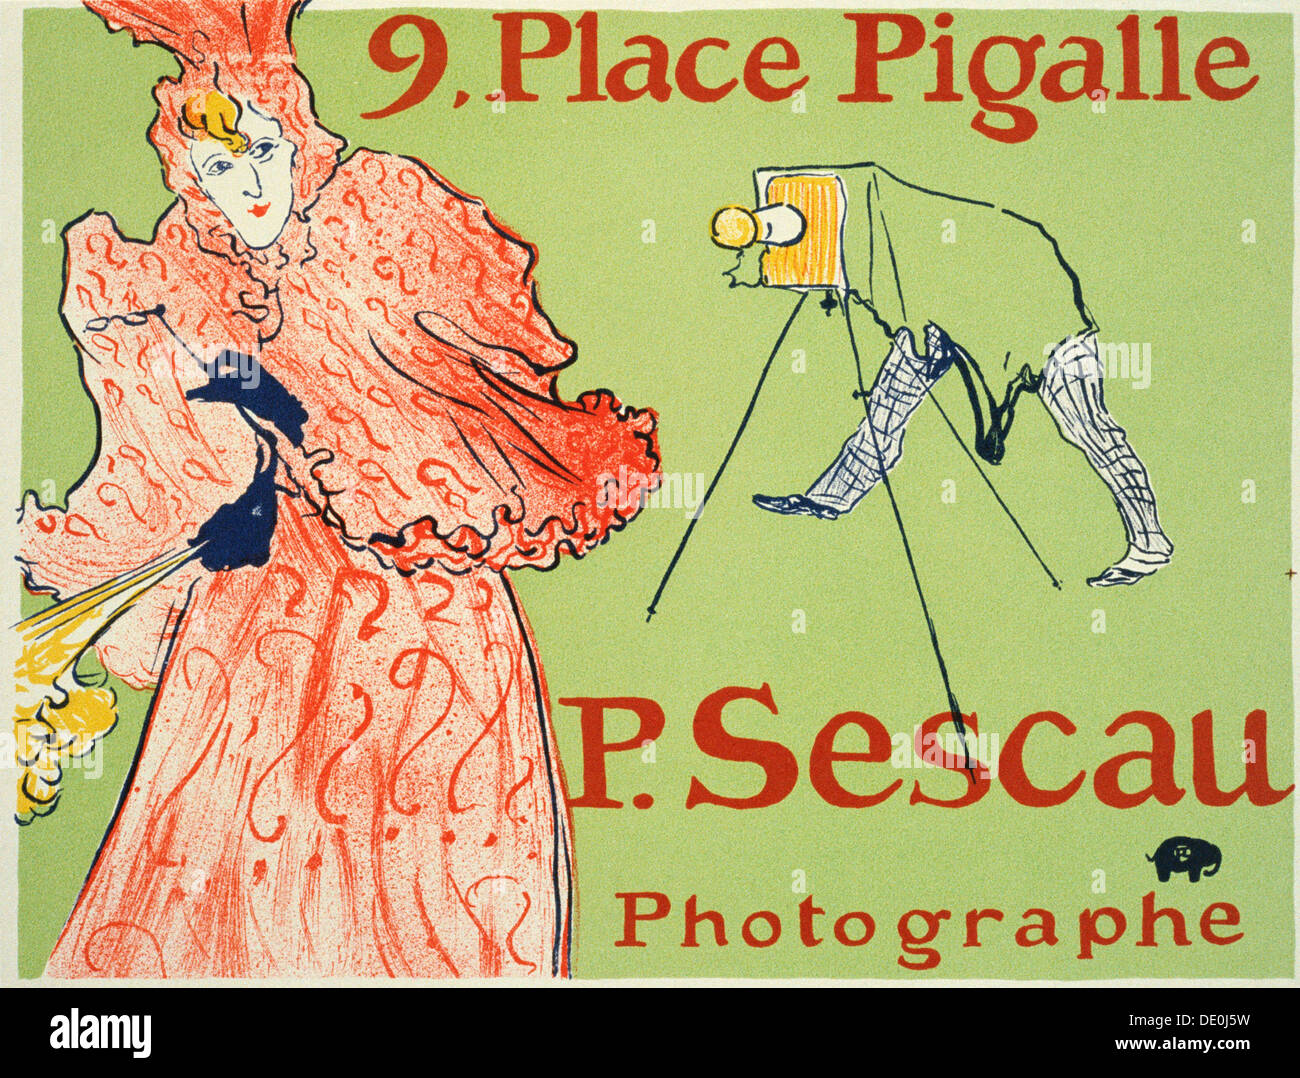 9, place Pigalle, P. Sescau Photographe (Poster), 1894.  Künstler: Henri de Toulouse-Lautrec Stockfoto